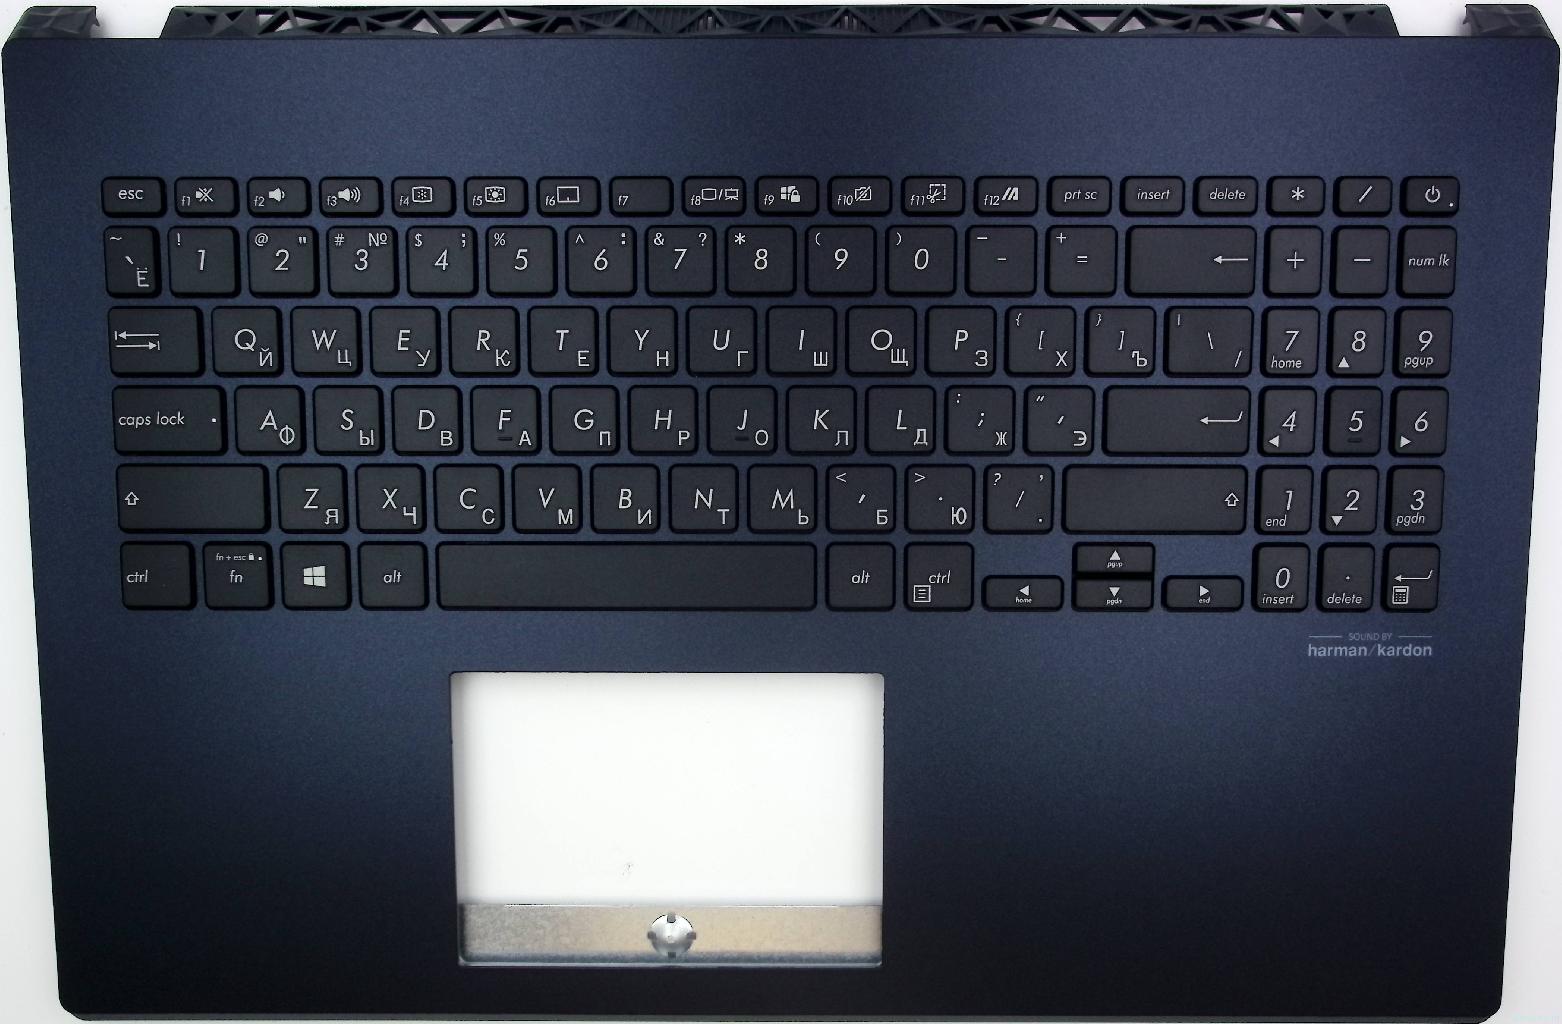 Топкейс для ноутбука Asus X571GT-1K